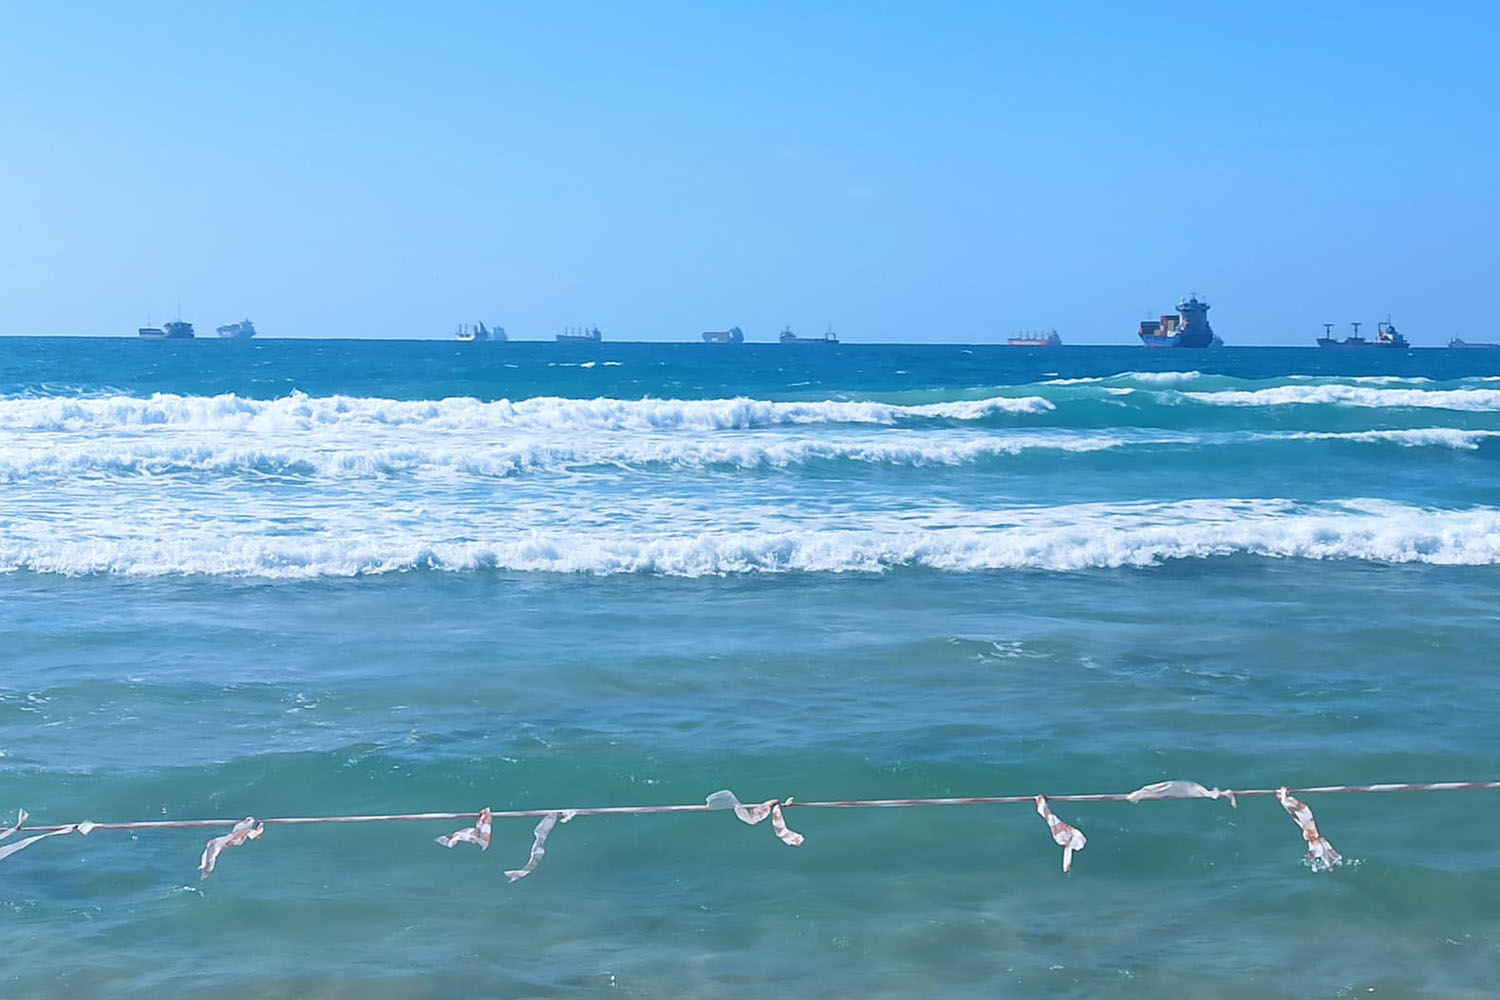  פקק של כ-70 אוניות ממתינות כיום מחוץ לנמלי ישראל. אין לכך כל פתרון פשוט (צילום: טל כספין)